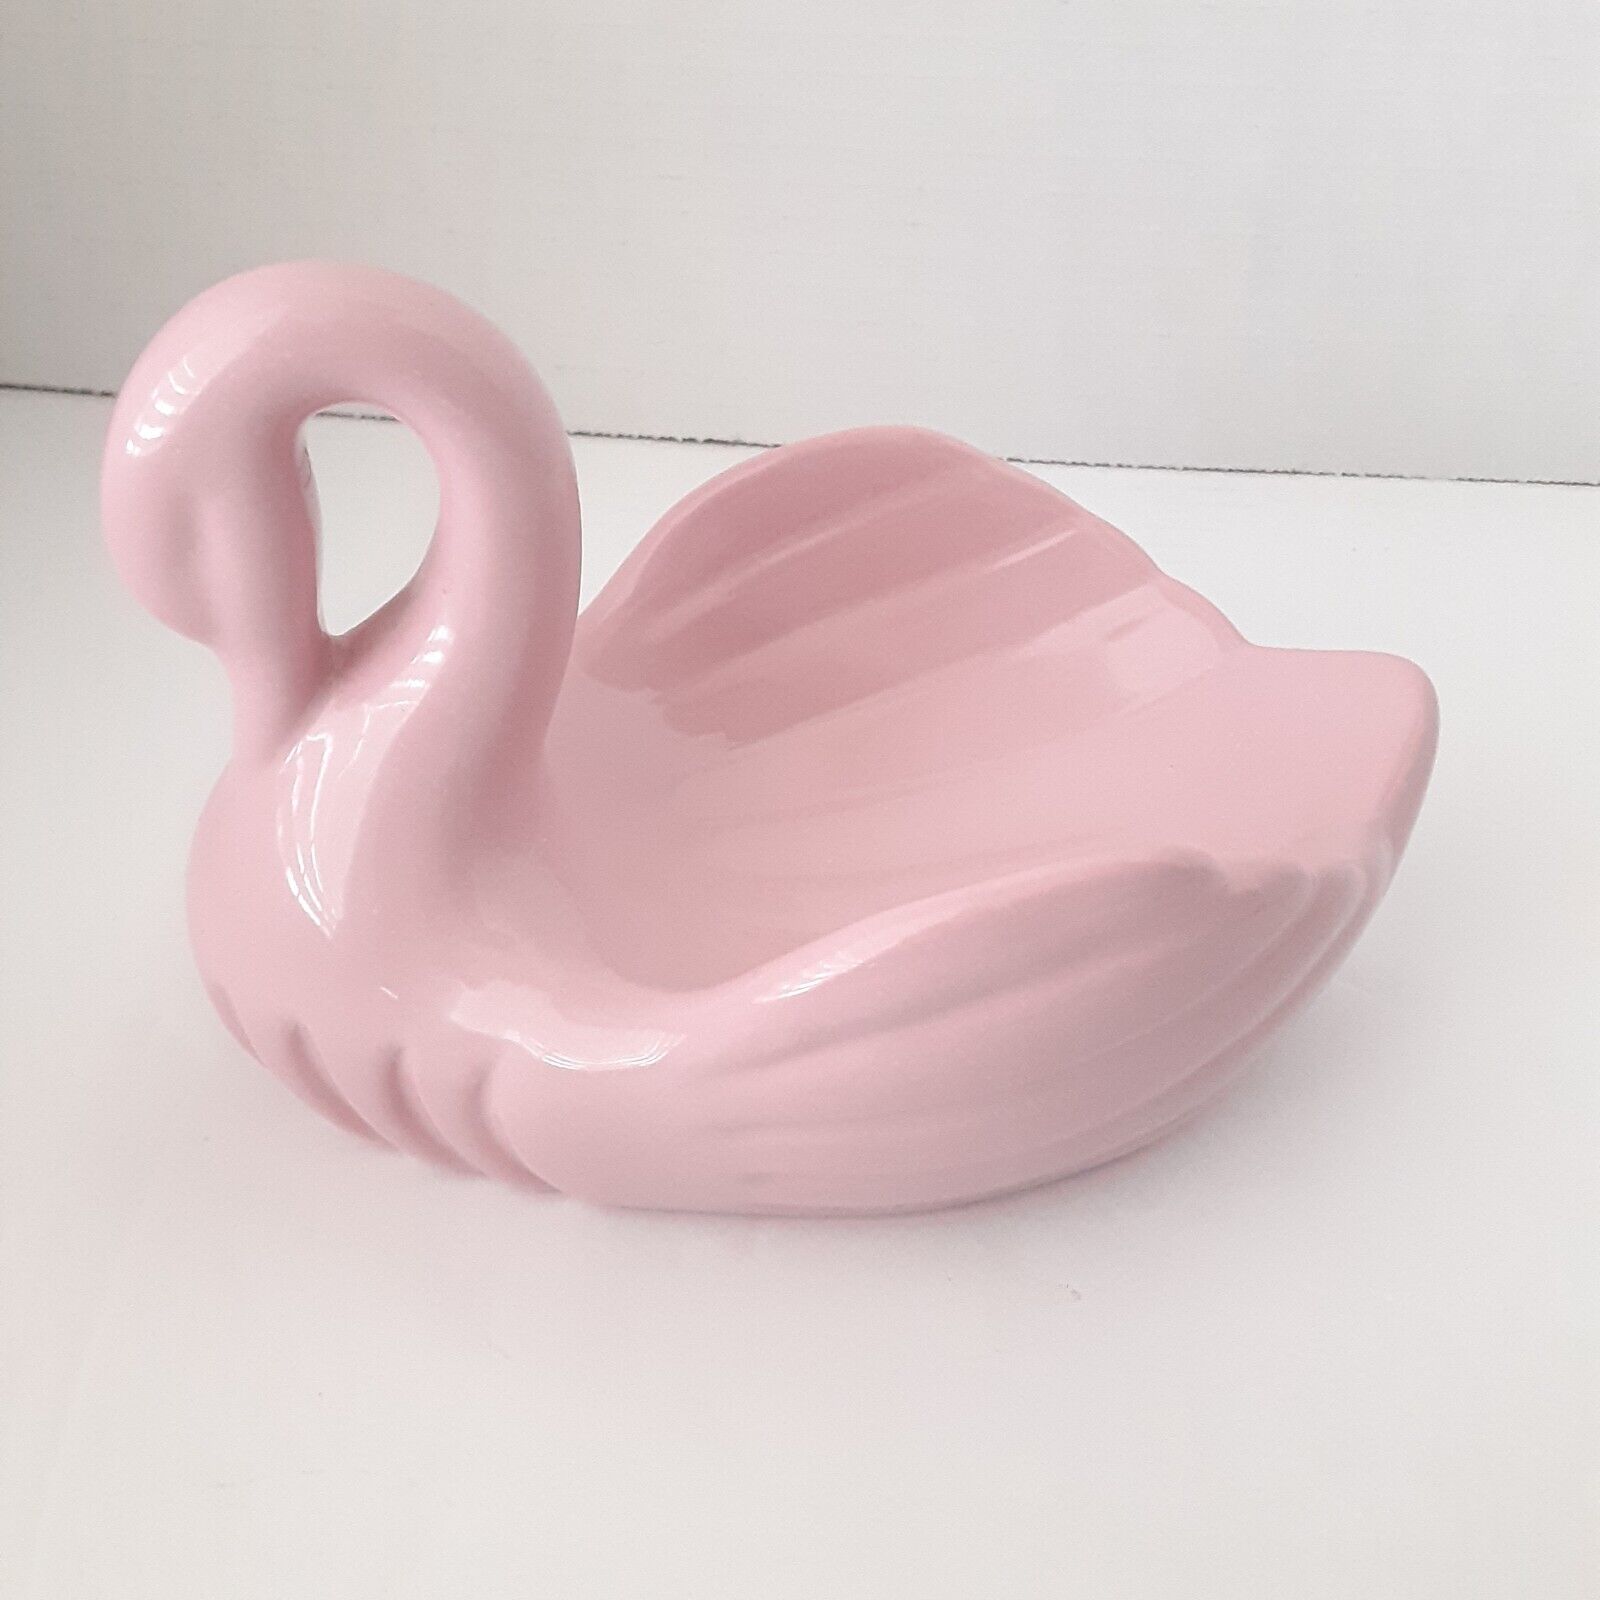 Vintage Ceramic Pink Swan Soap Holder Trinket Dish 80s 90s Bathroom Decor